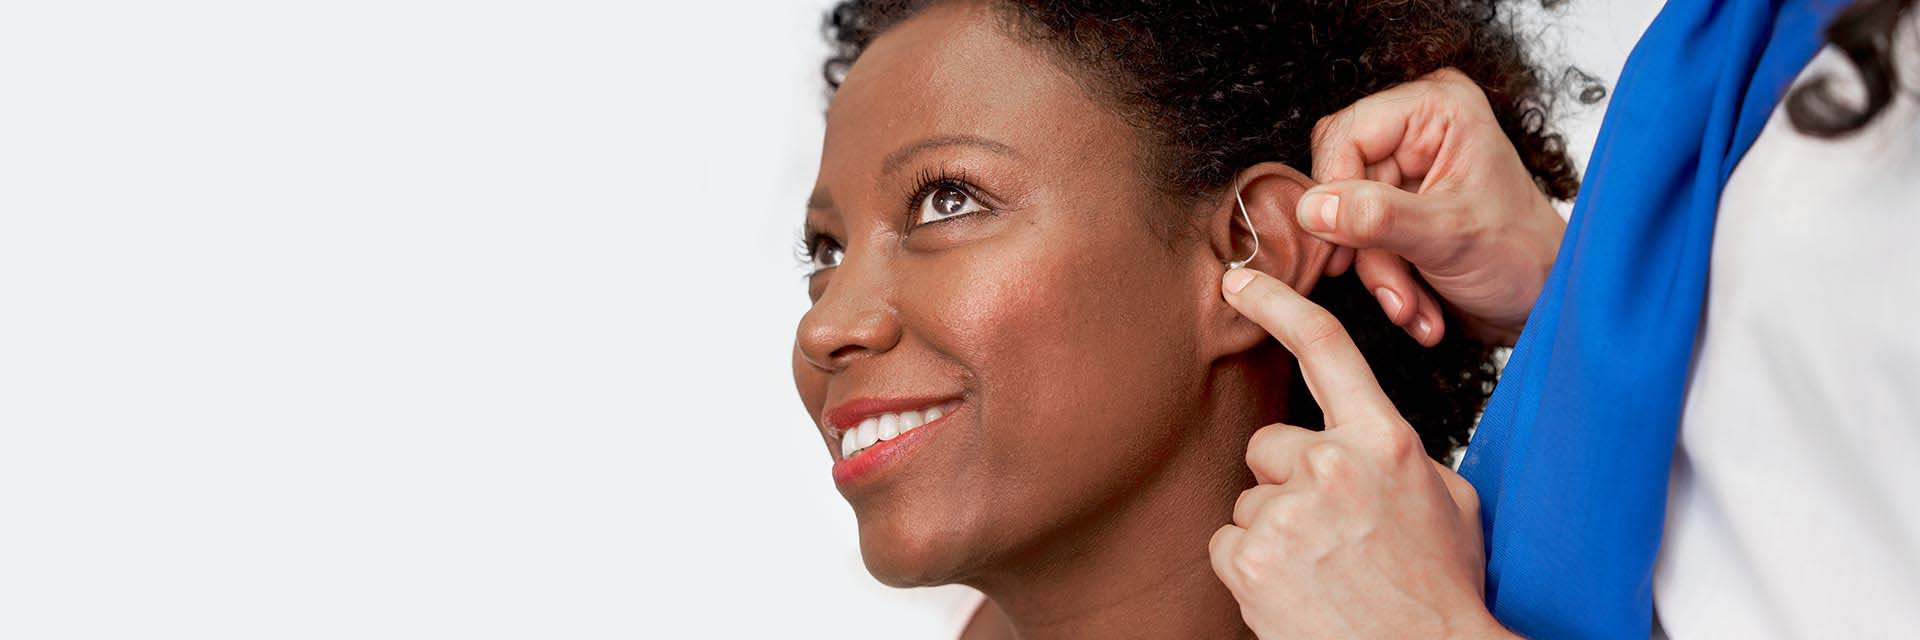 Vrouw krijgt het beste gehoorapparaat aangemeten